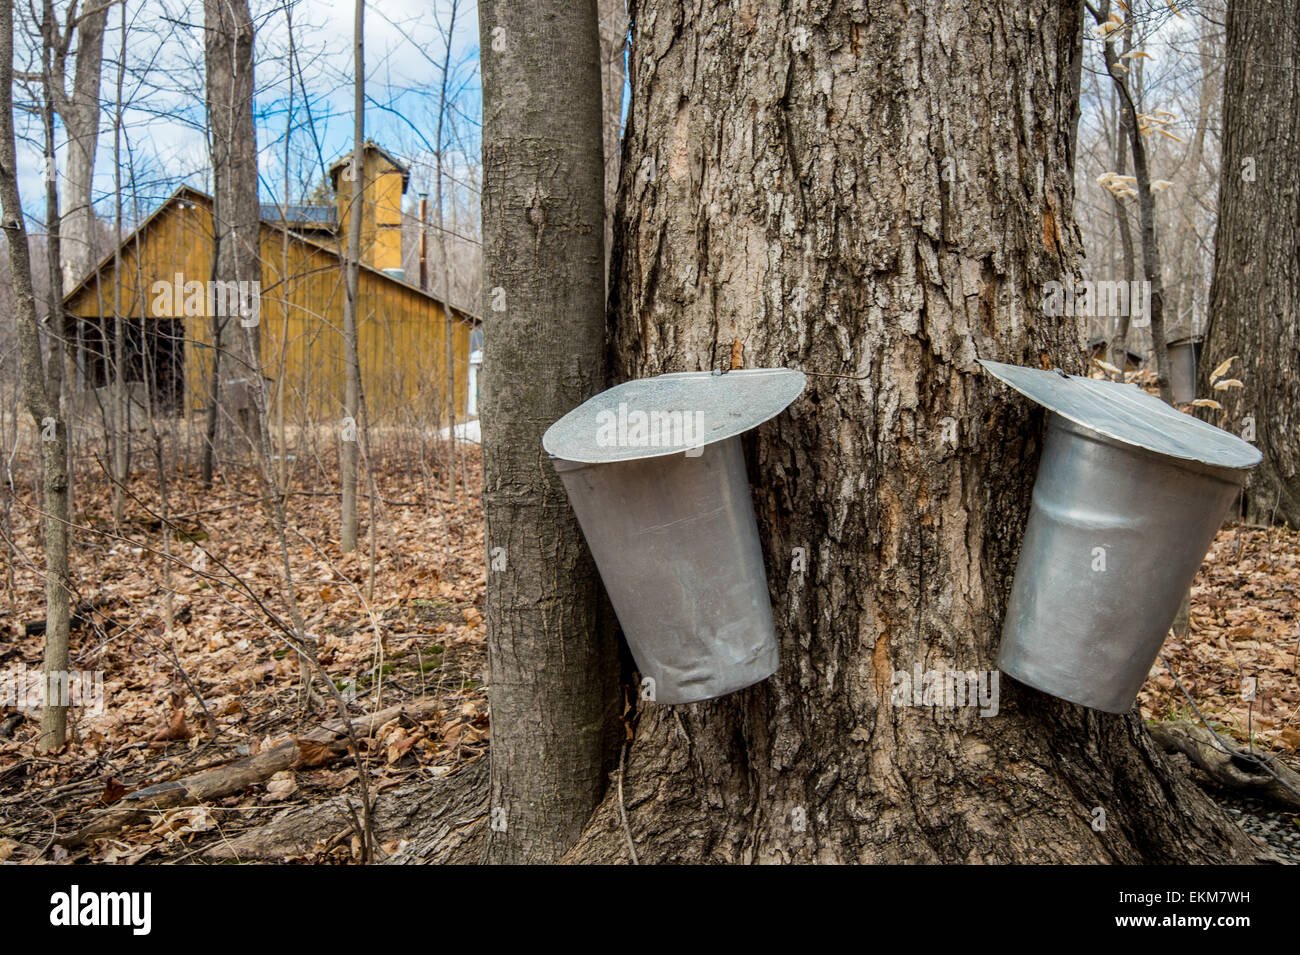 Eimer zur Erhebung der Saft der Ahornbäume, Ahornsirup in Quebec zu produzieren. Stockfoto